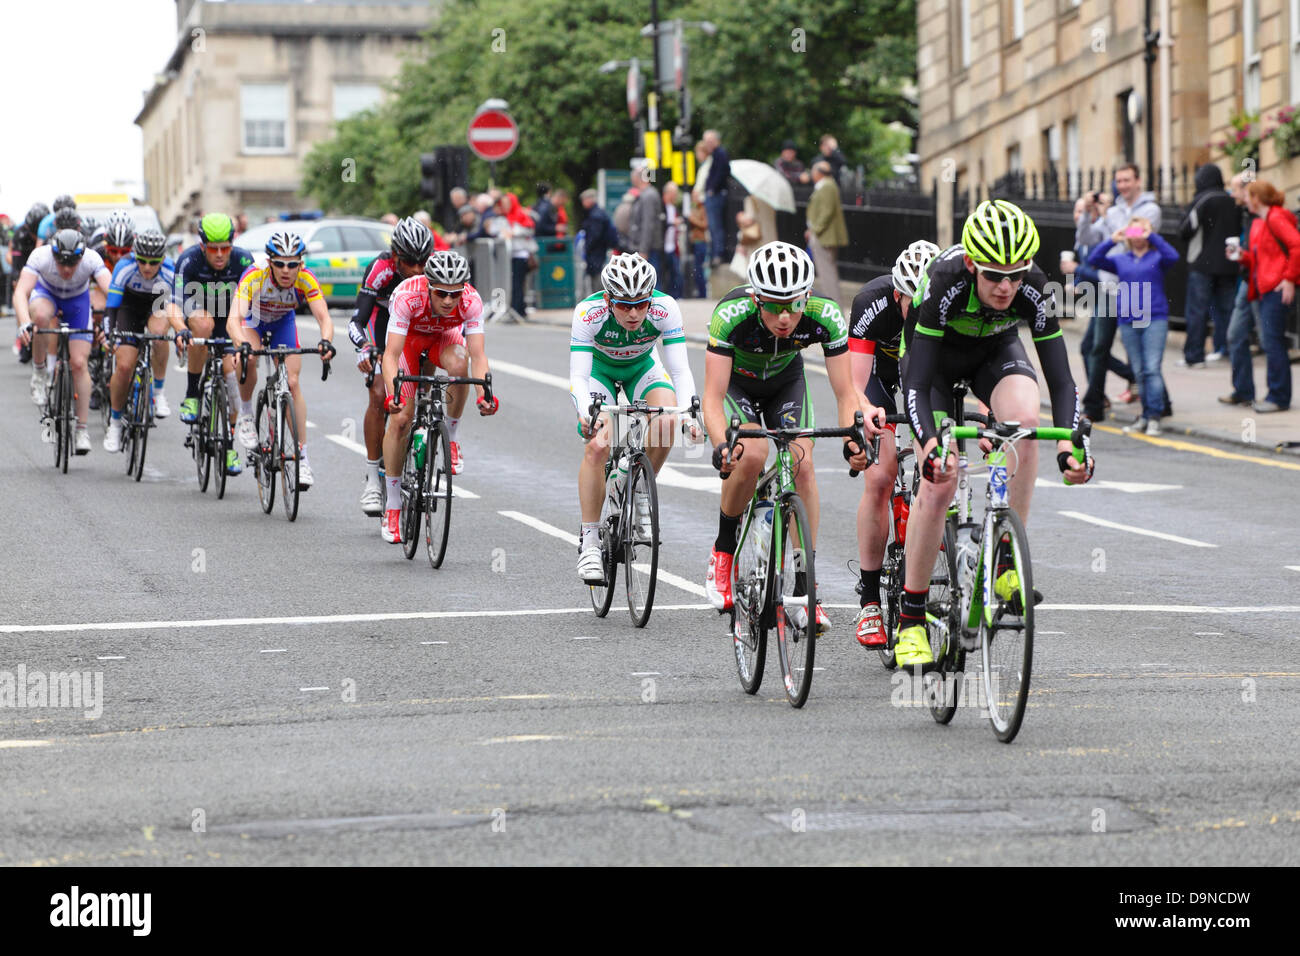 West George Street, Glasgow, Écosse, Royaume-Uni, dimanche 23 juin 2013. Championnat de course de randonnée cycliste britannique - Riders dans la course de route masculine dans le centre-ville Banque D'Images